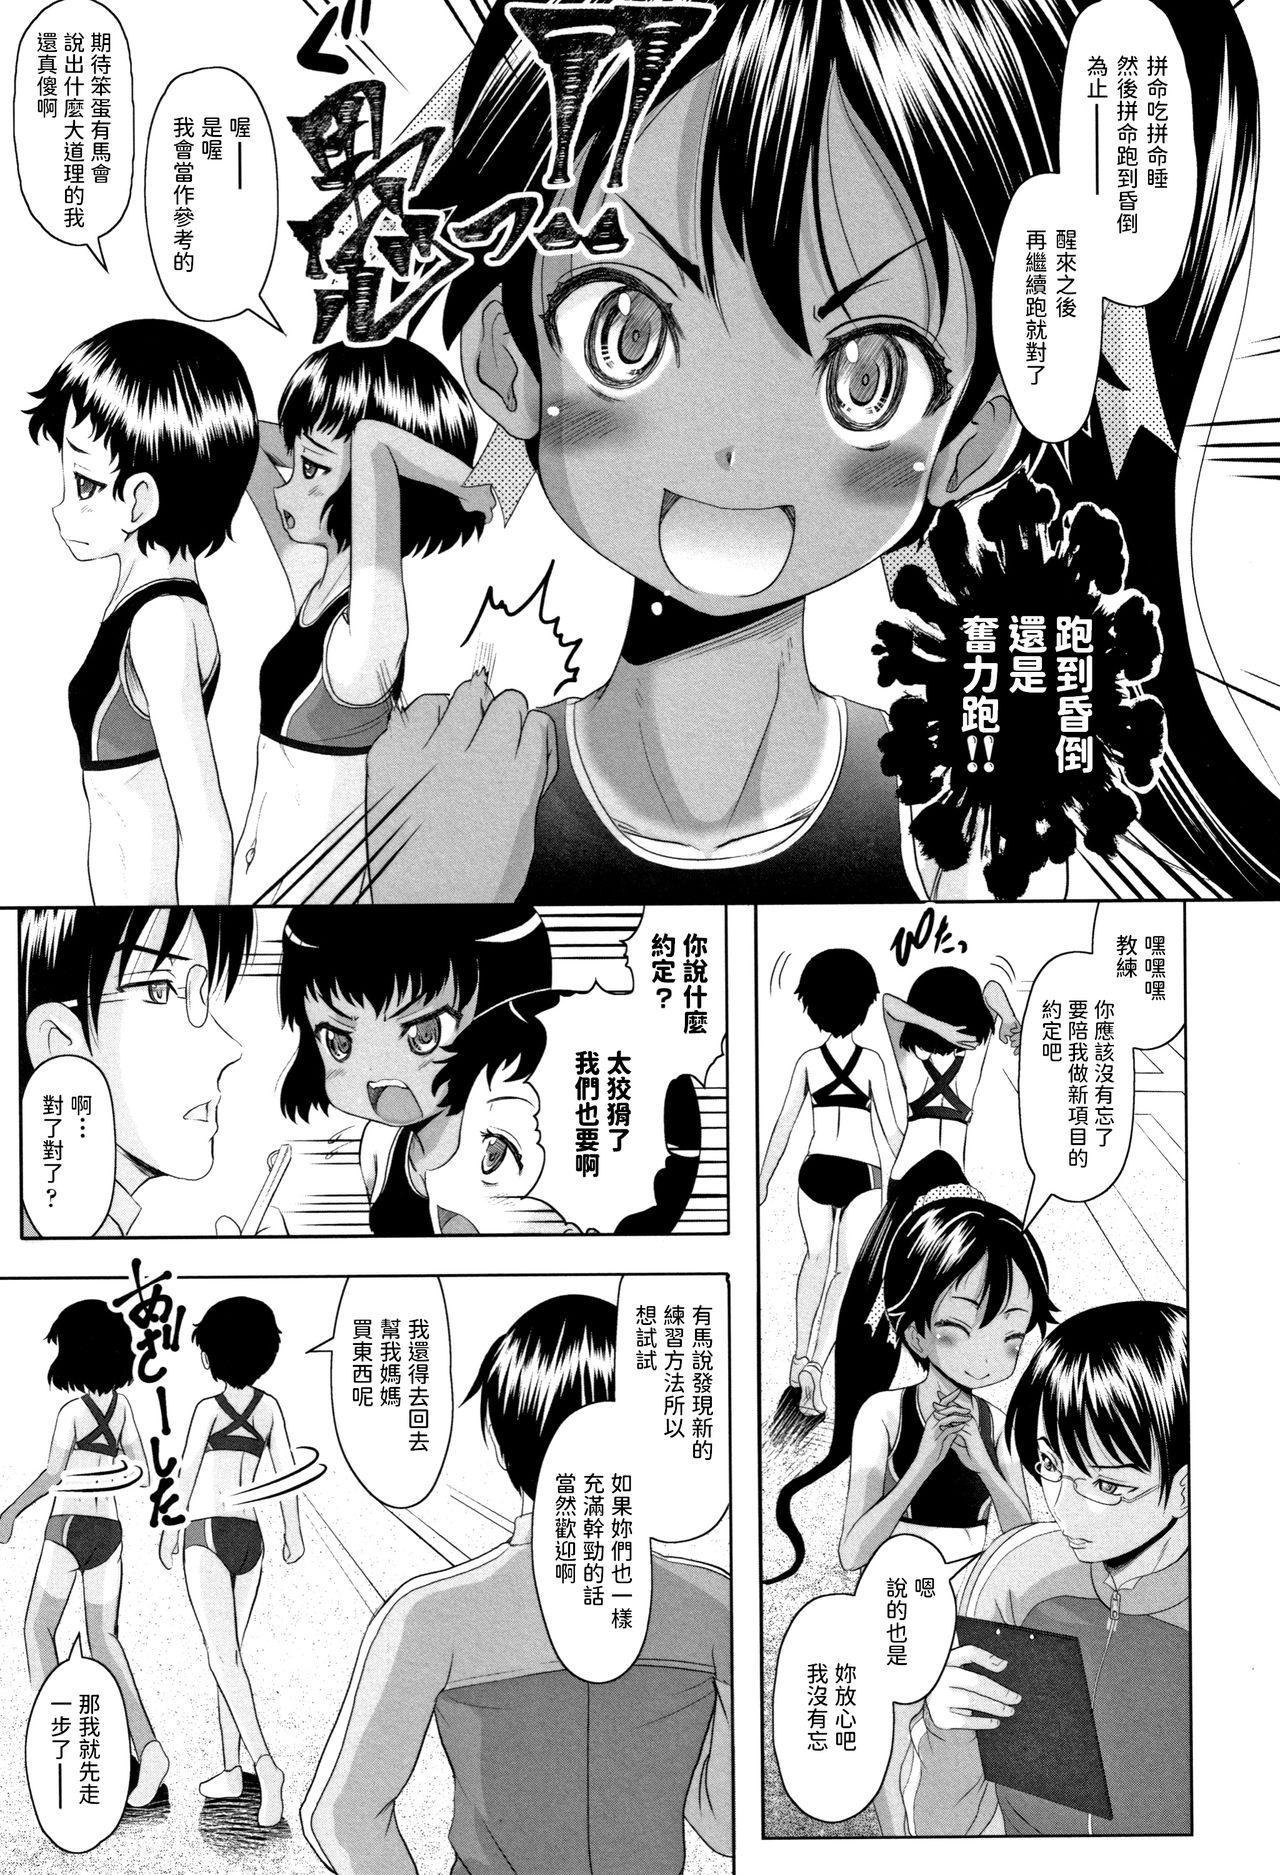 Chibola Arima to Himitsu no Tokkun Shiyo! Spandex - Page 3